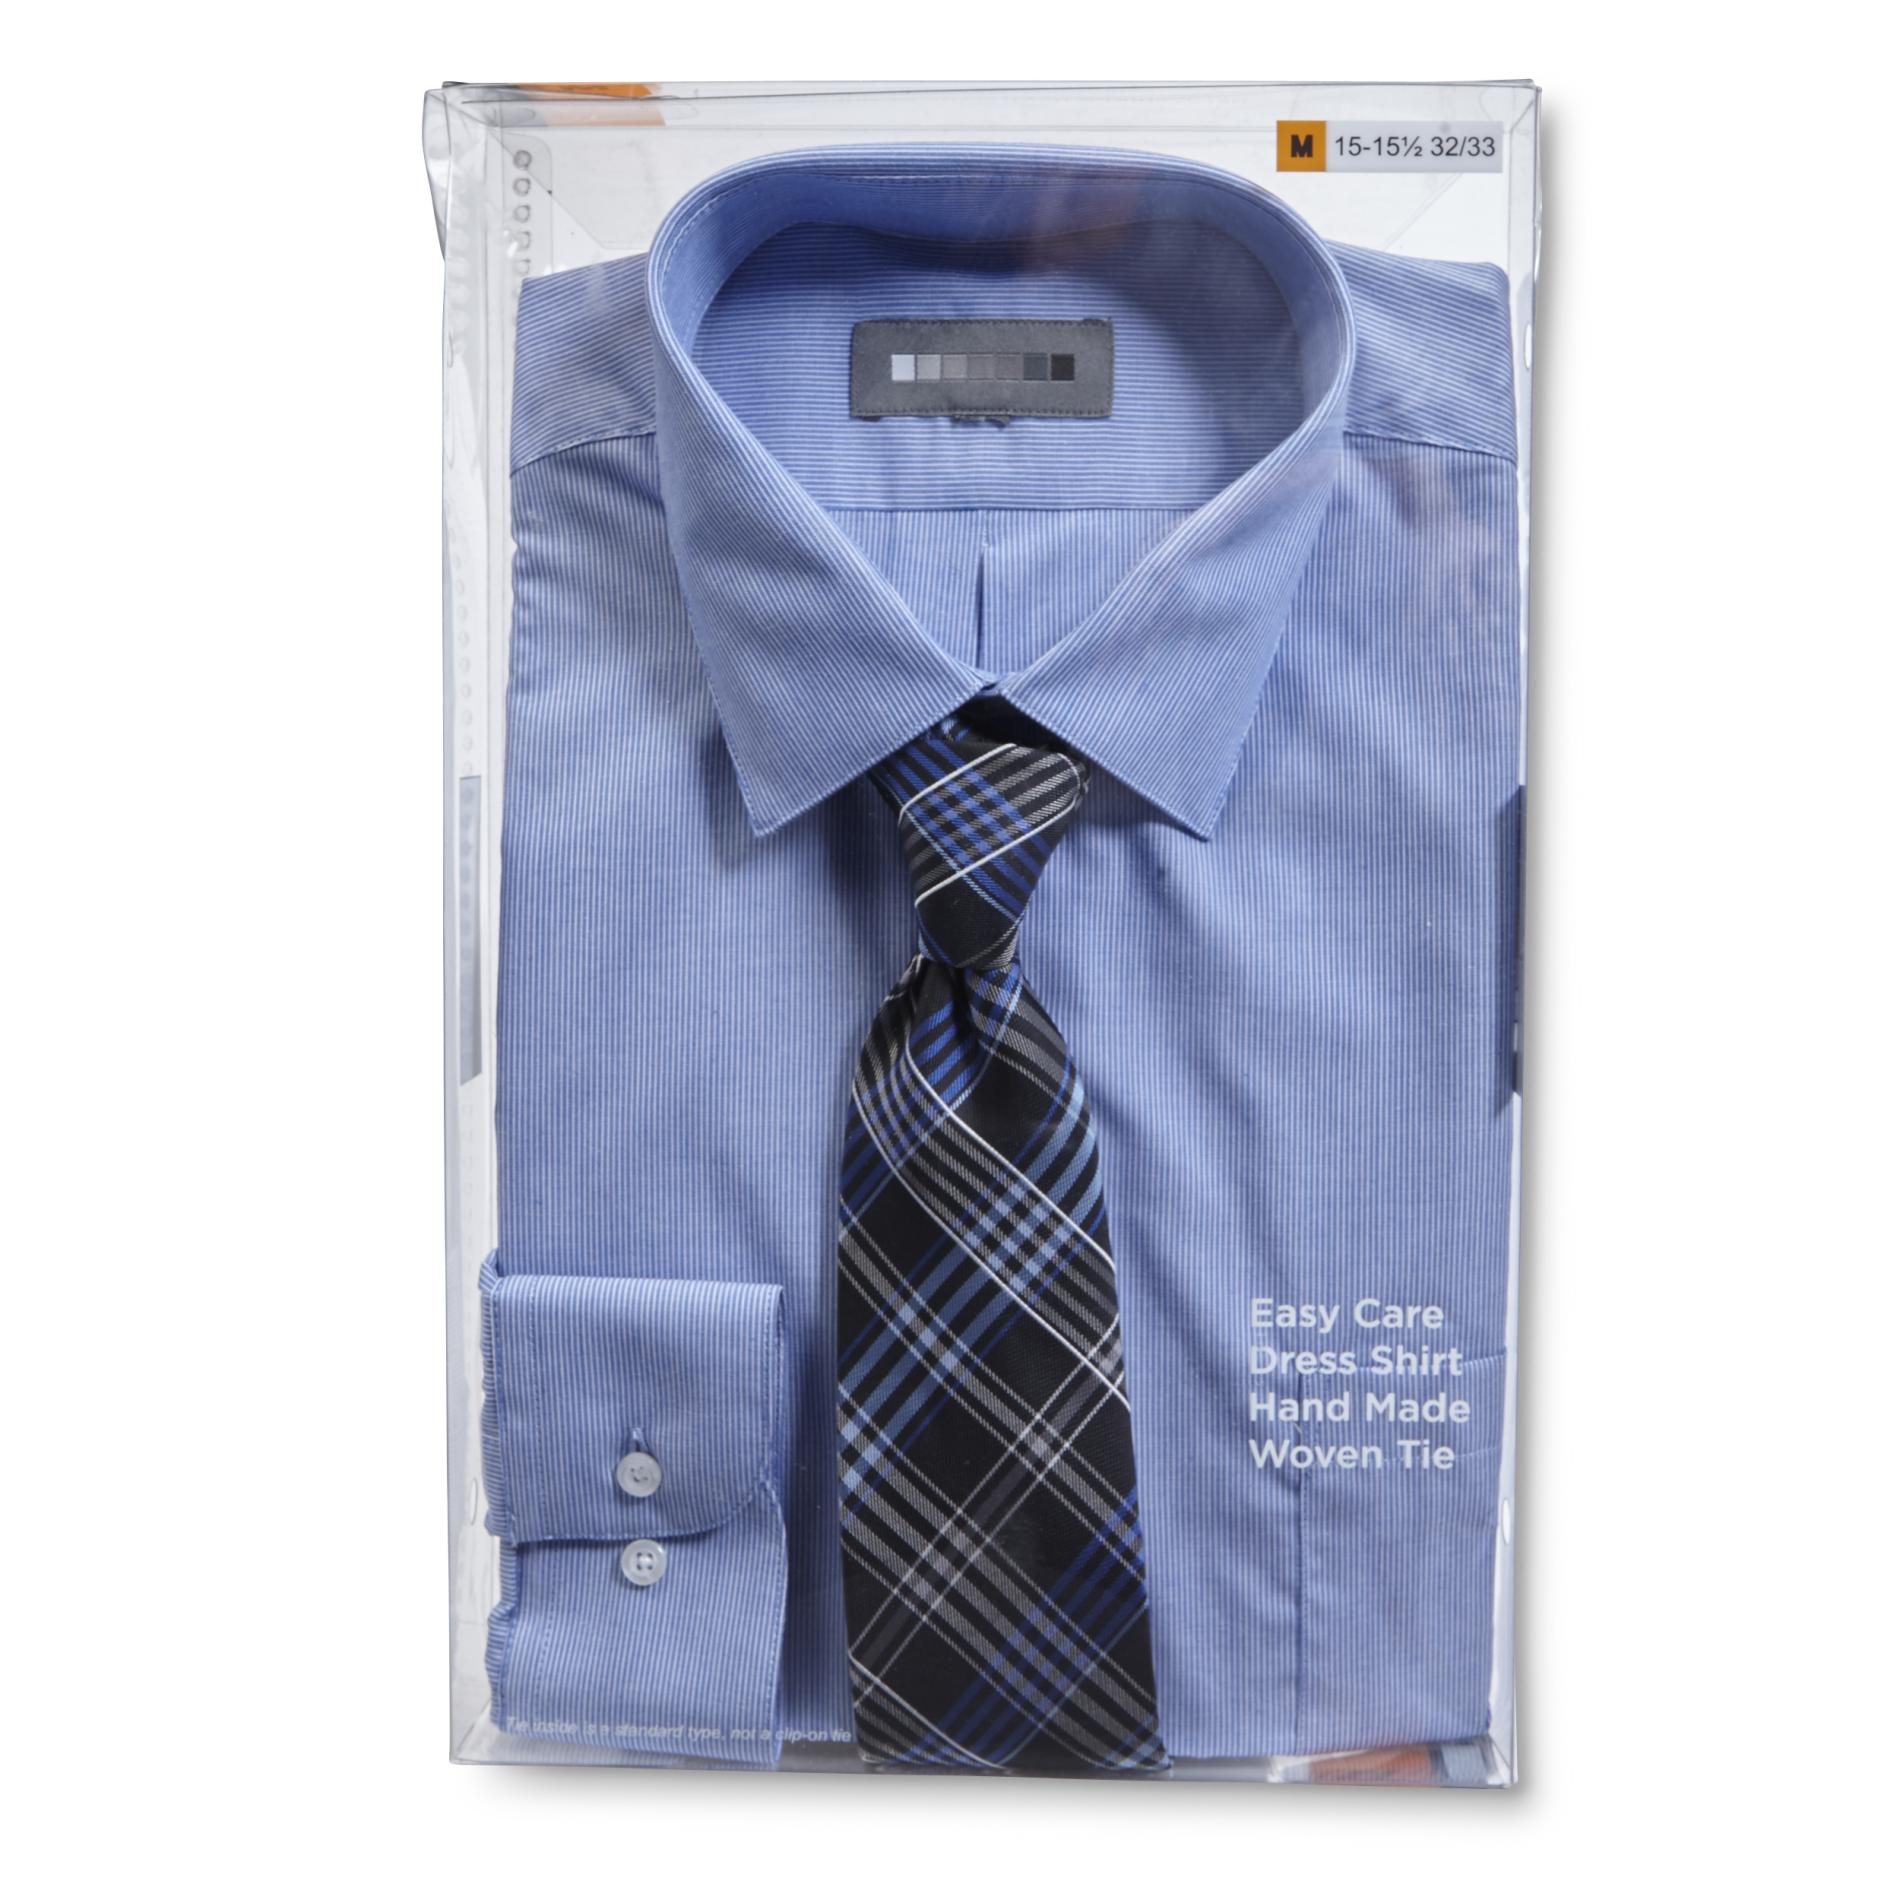 Covington Men's Easy Care Dress Shirt & Necktie - Plaid